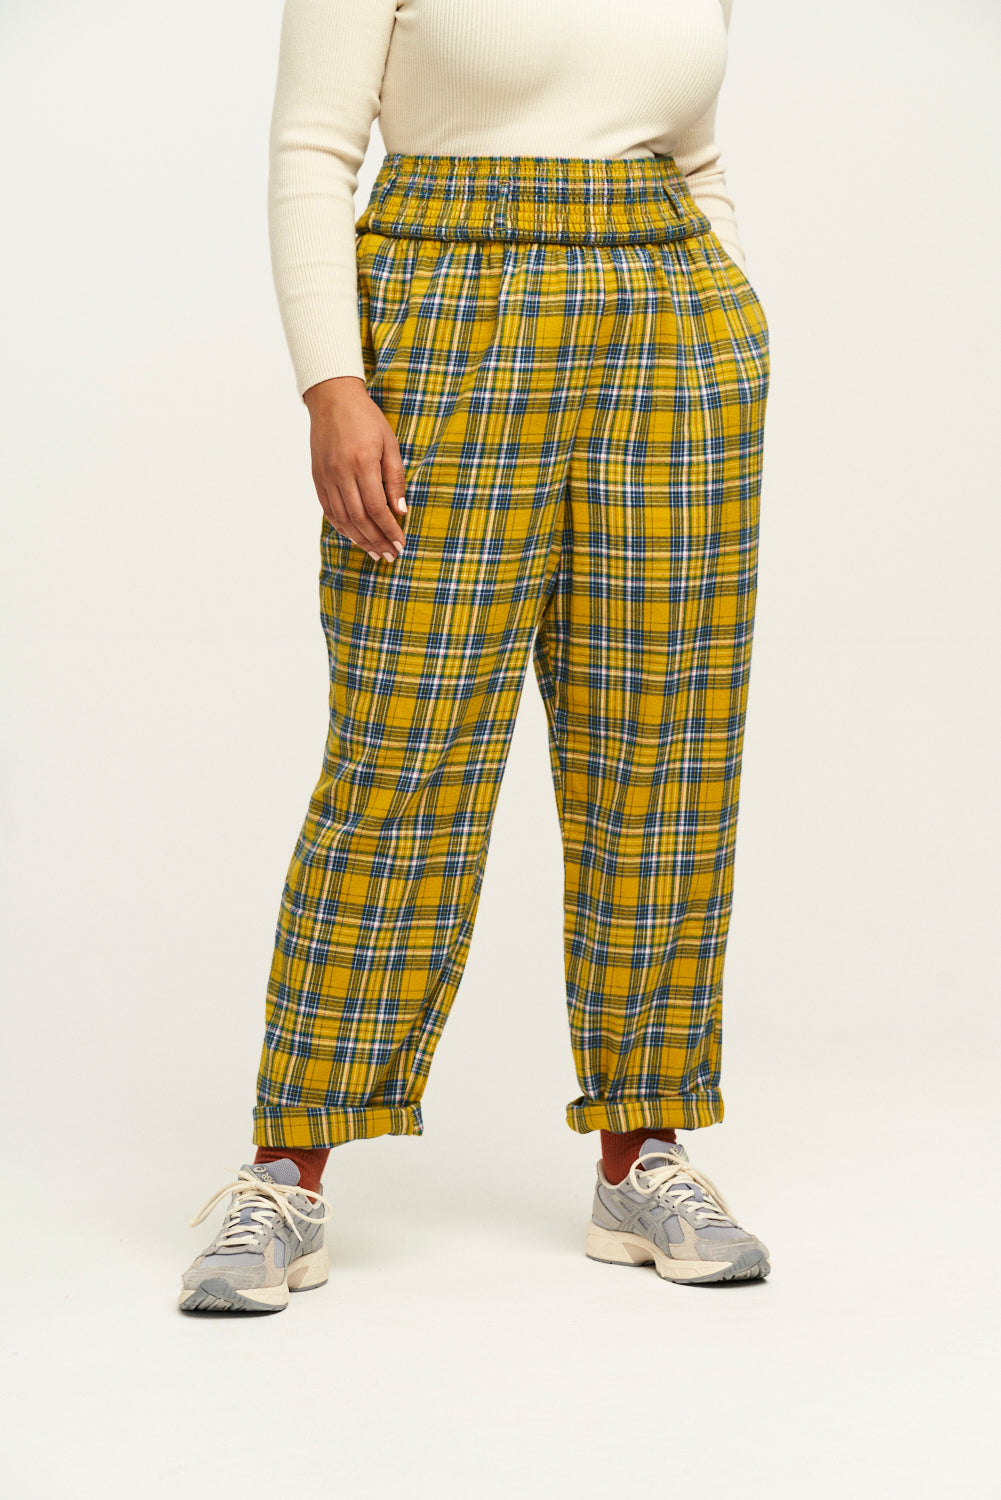 pants Luca Mustard Tartan Size S - Boho-Chic Clothing